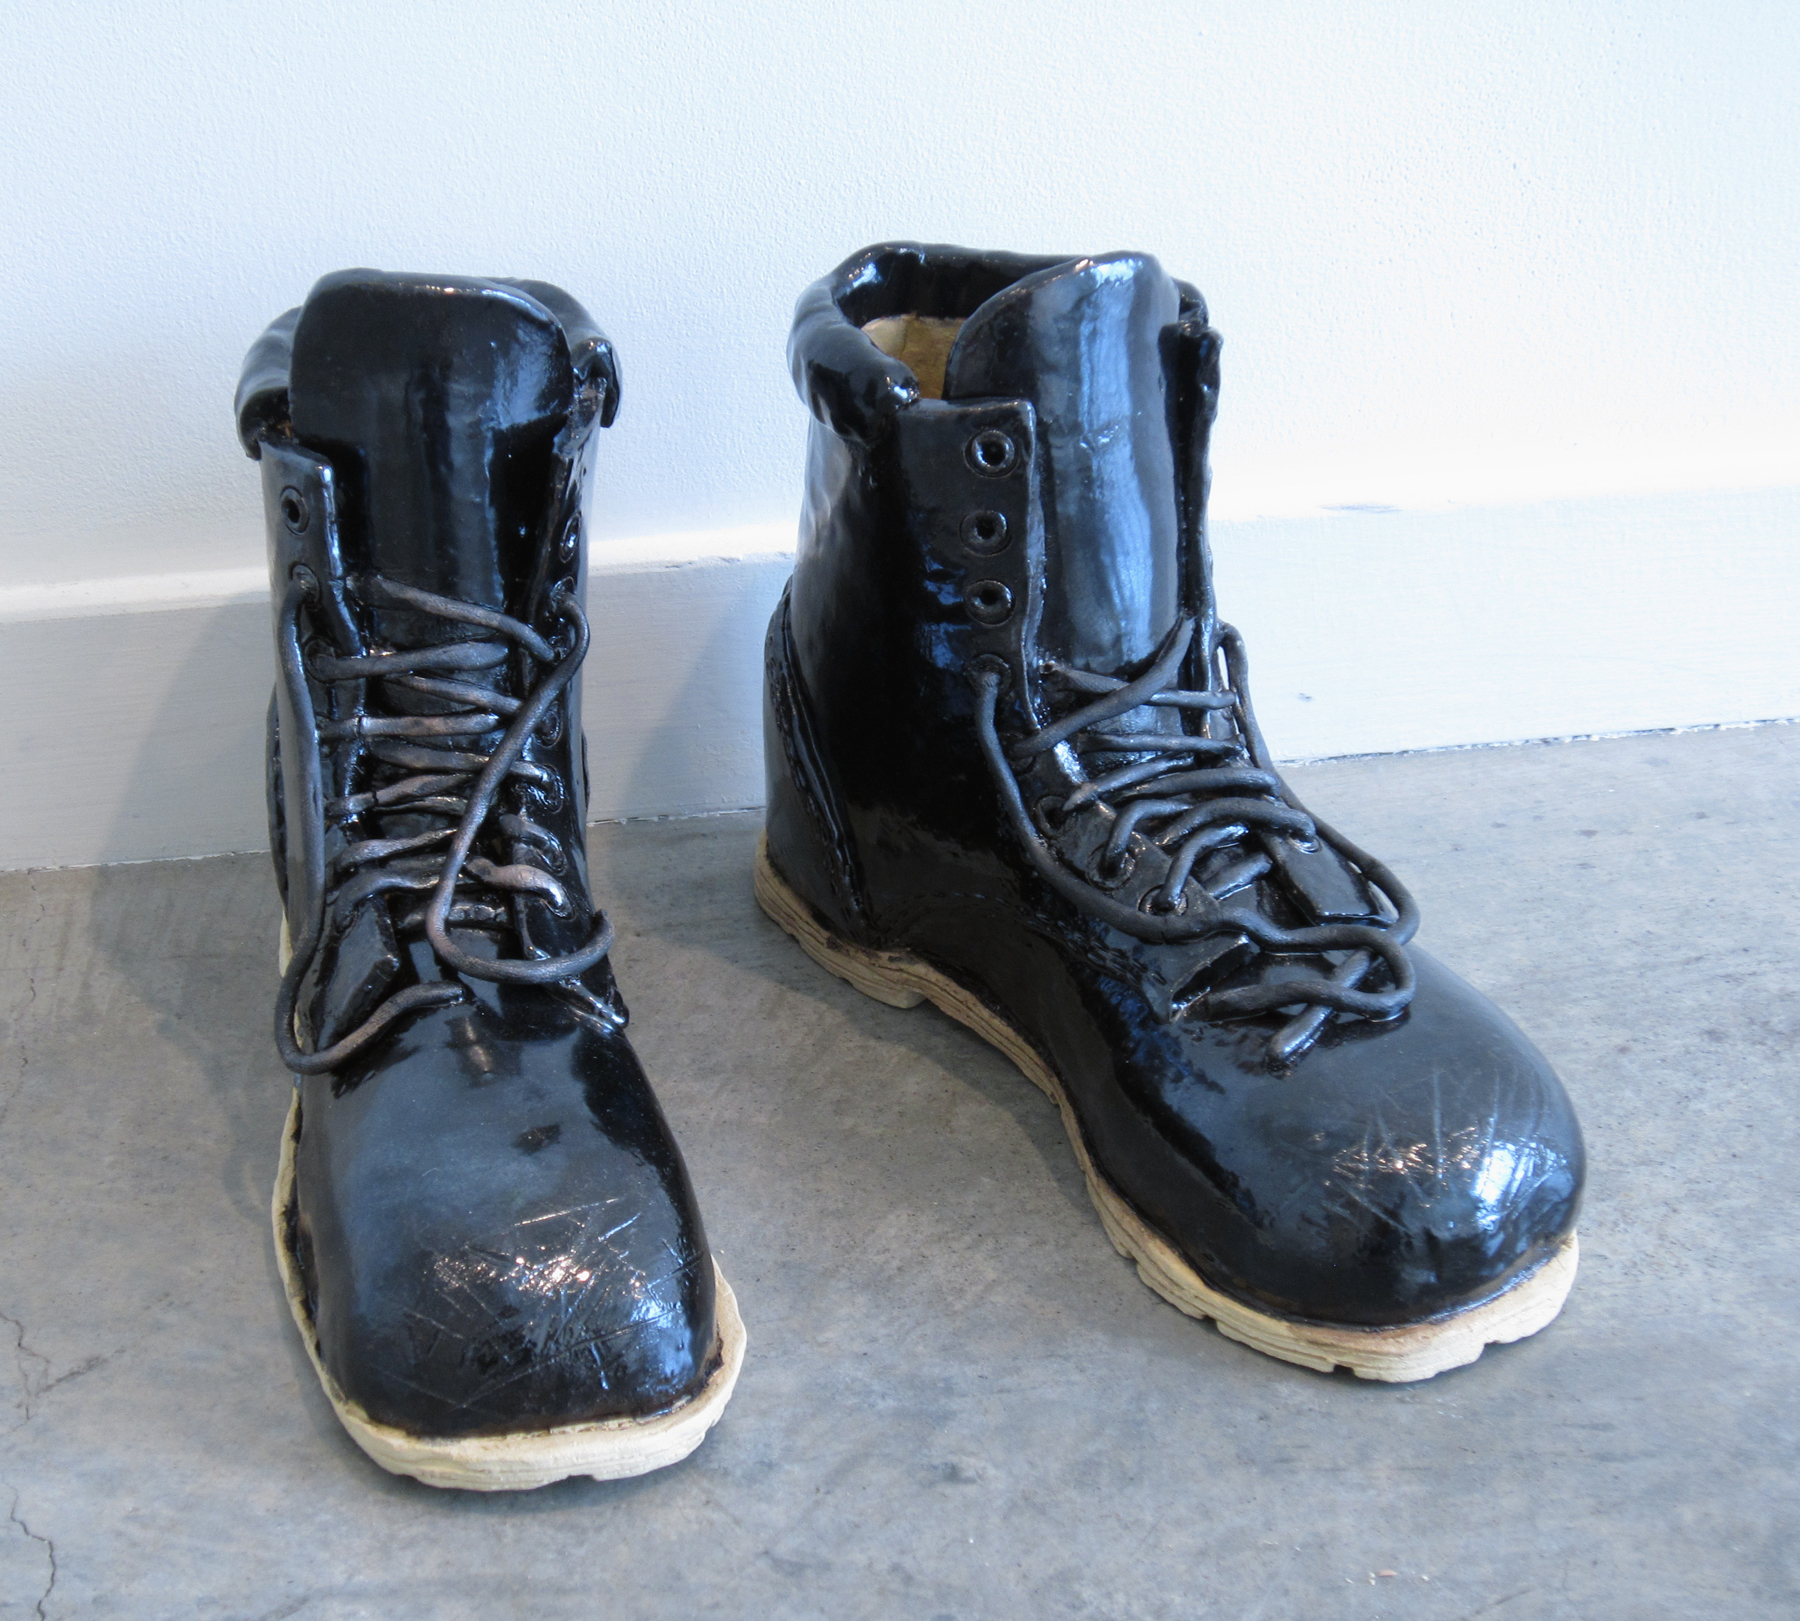   ERIK SCOLLON   Empty Boots,&nbsp; 2013, glaze on stoneware, 9" x 11 1/2" x 4" (each) 